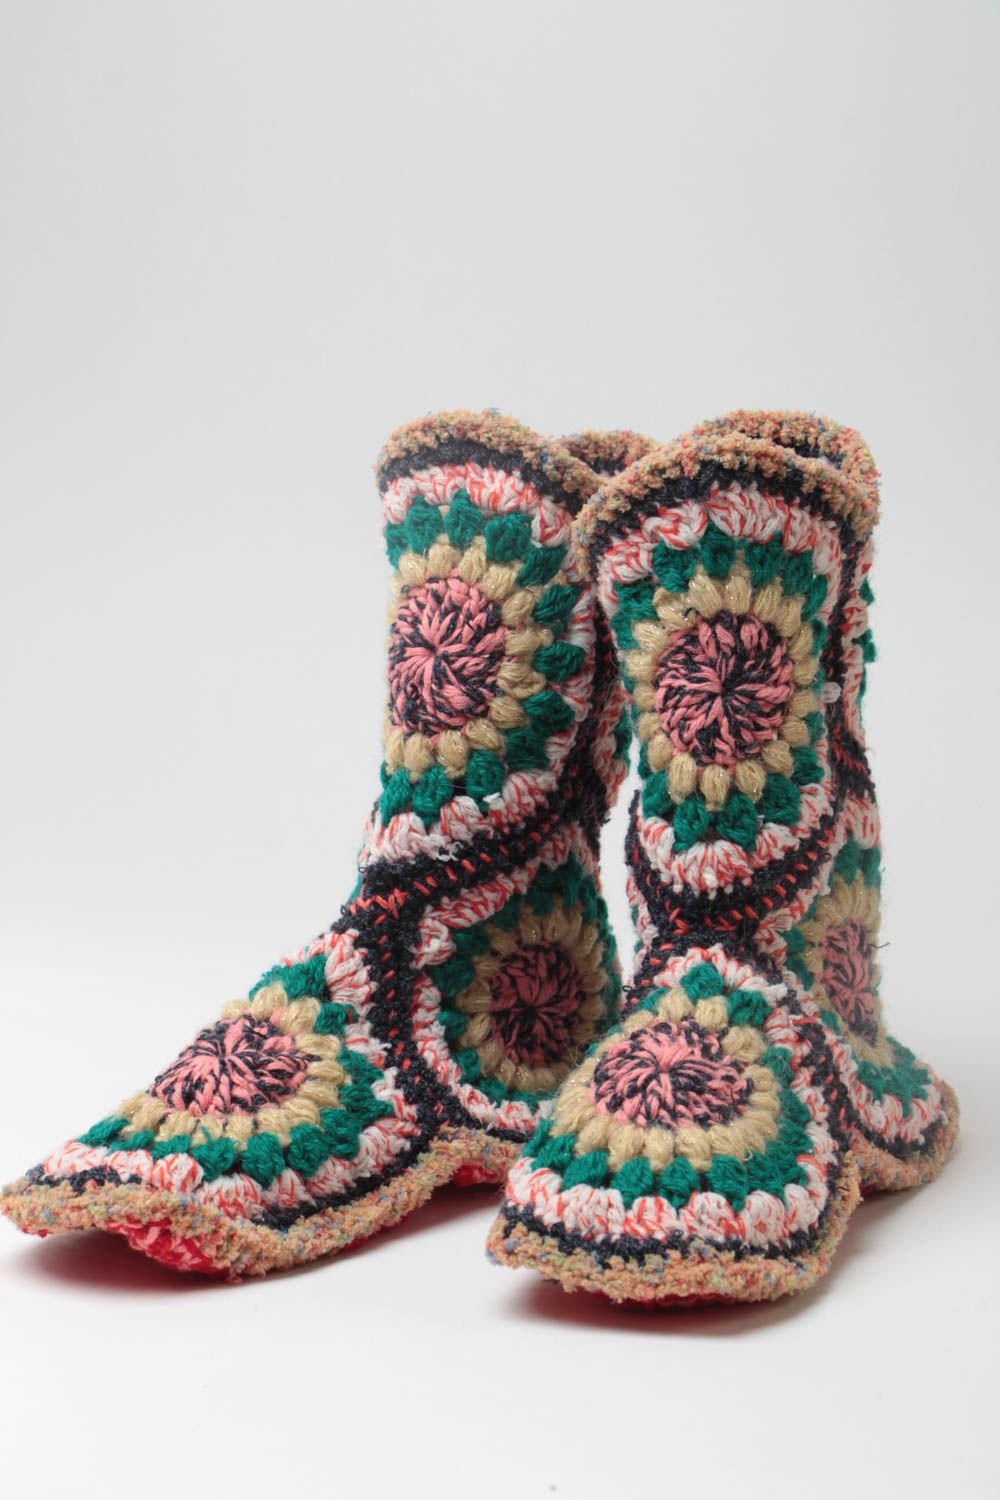 Chaussons bottes tricotés au crochet multicolores faits main pour femme photo 2